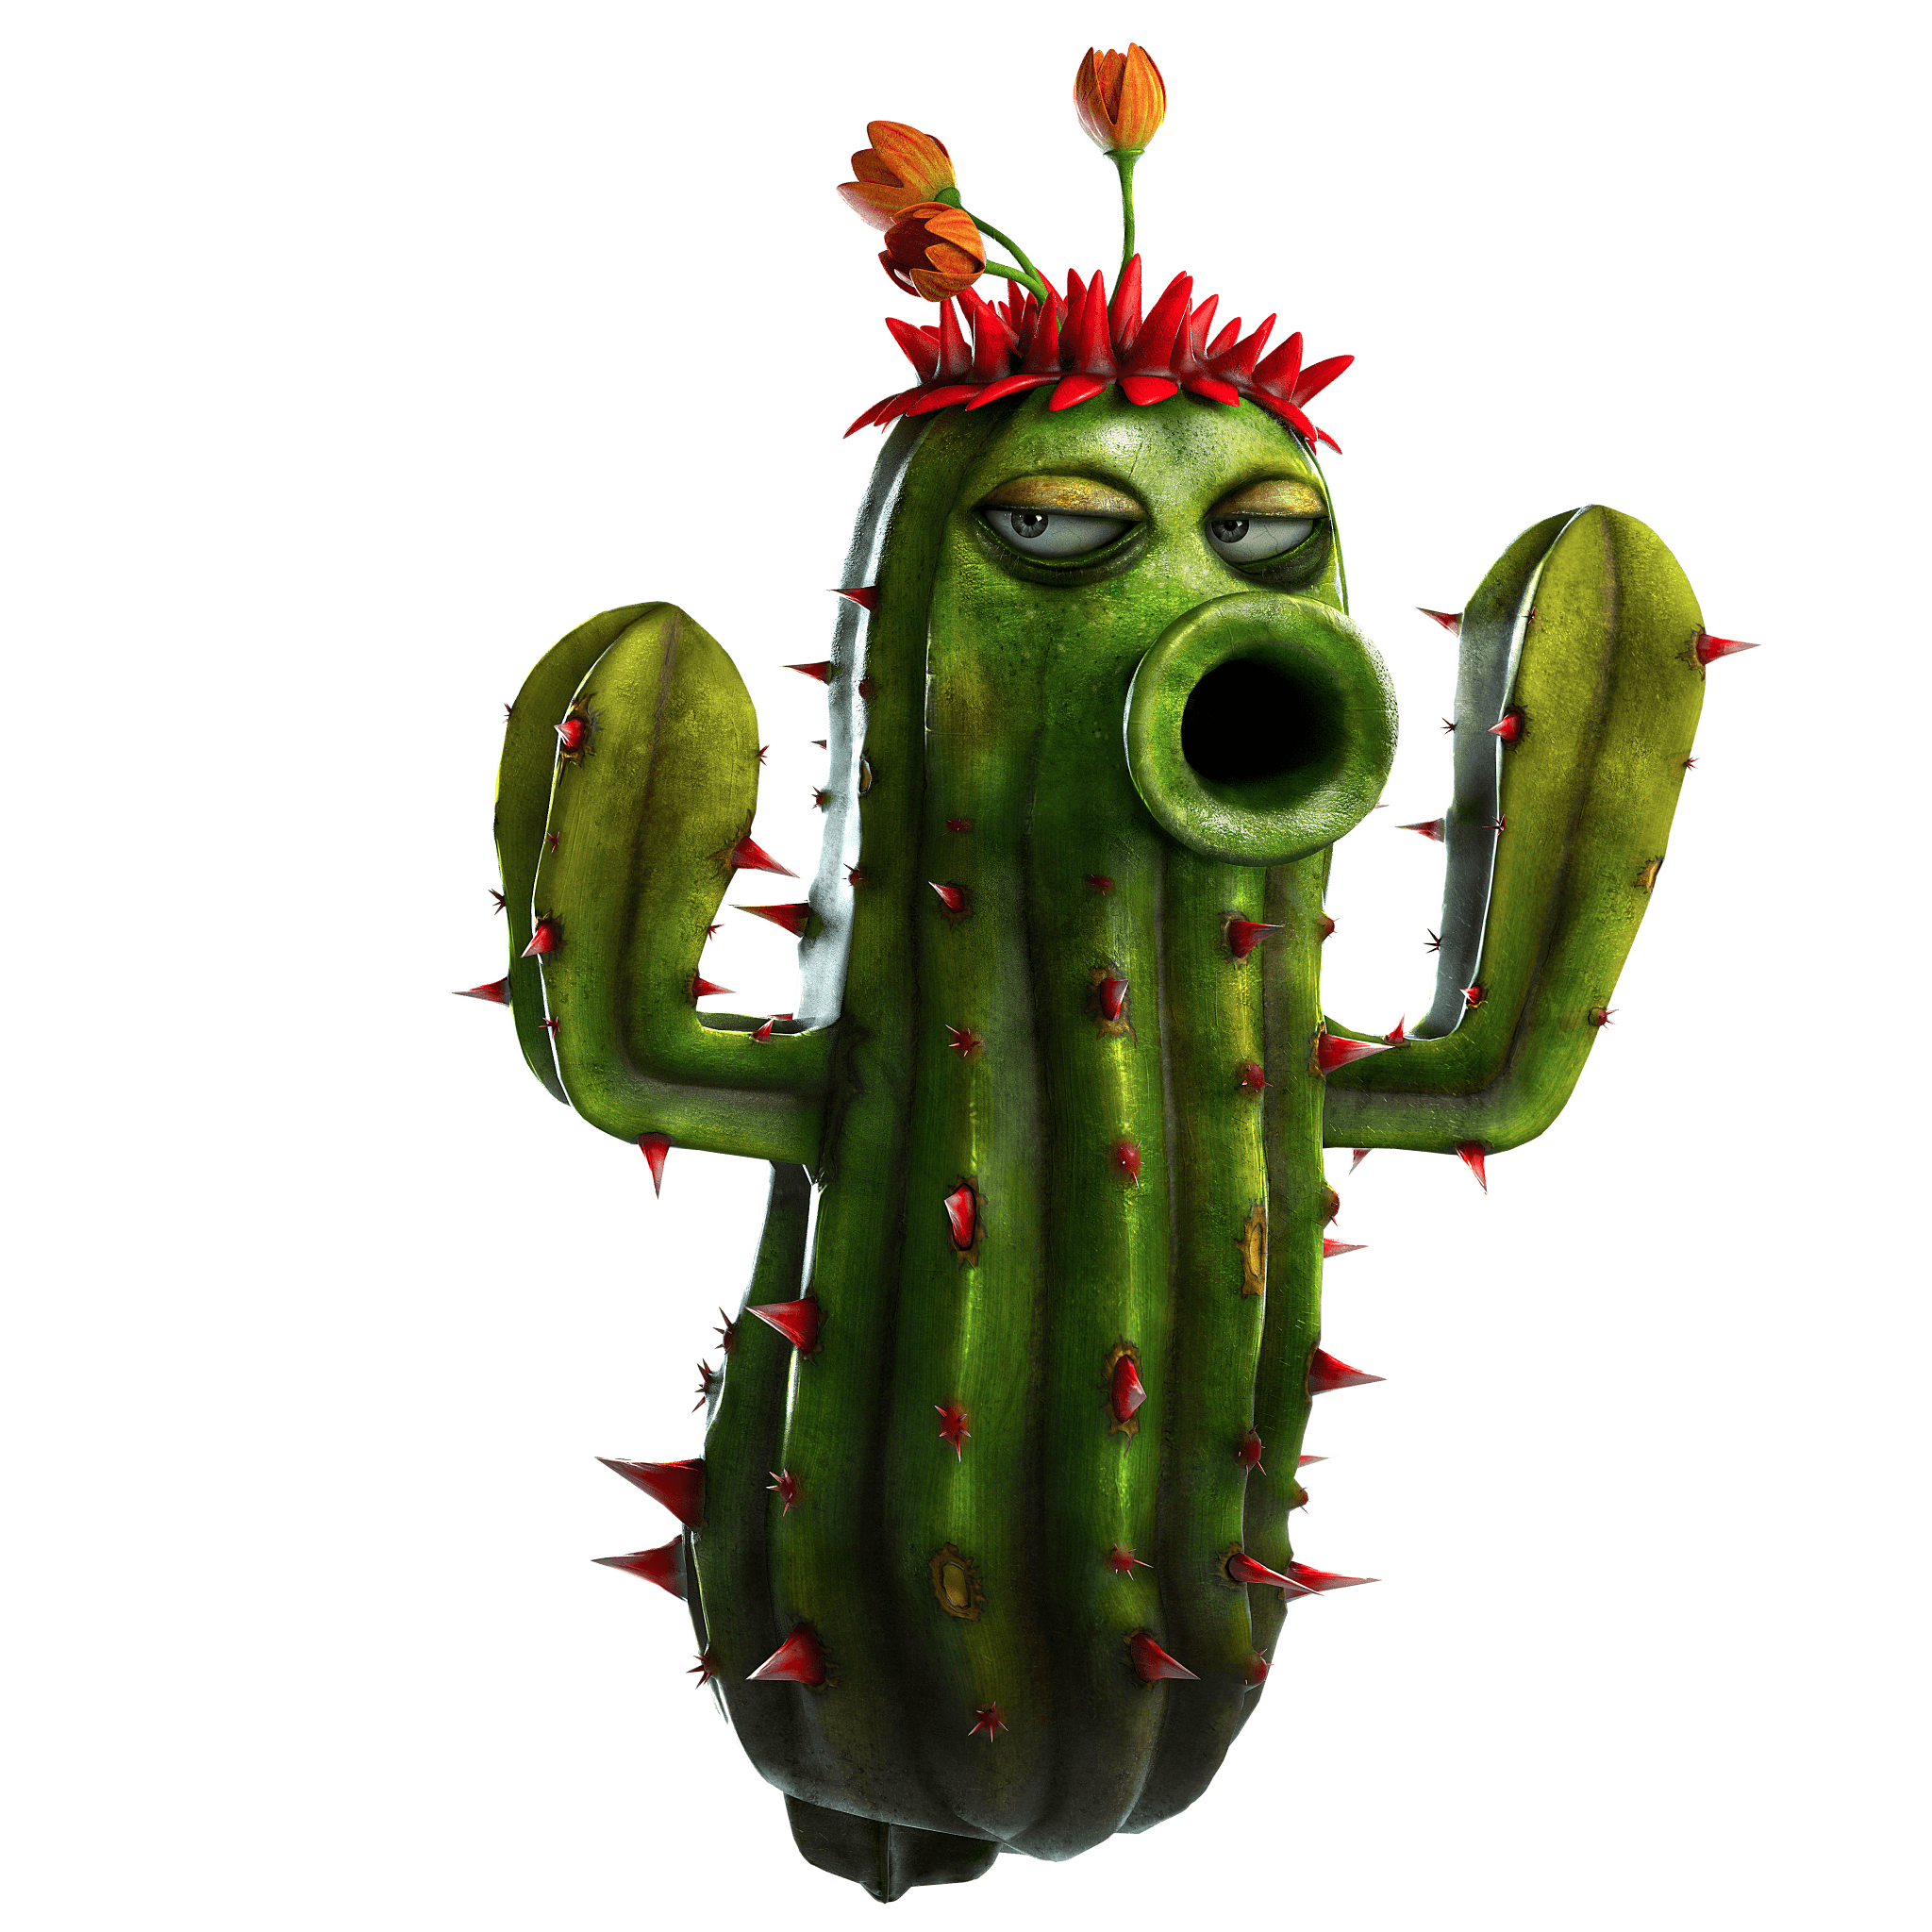 pvz gw2 cactus